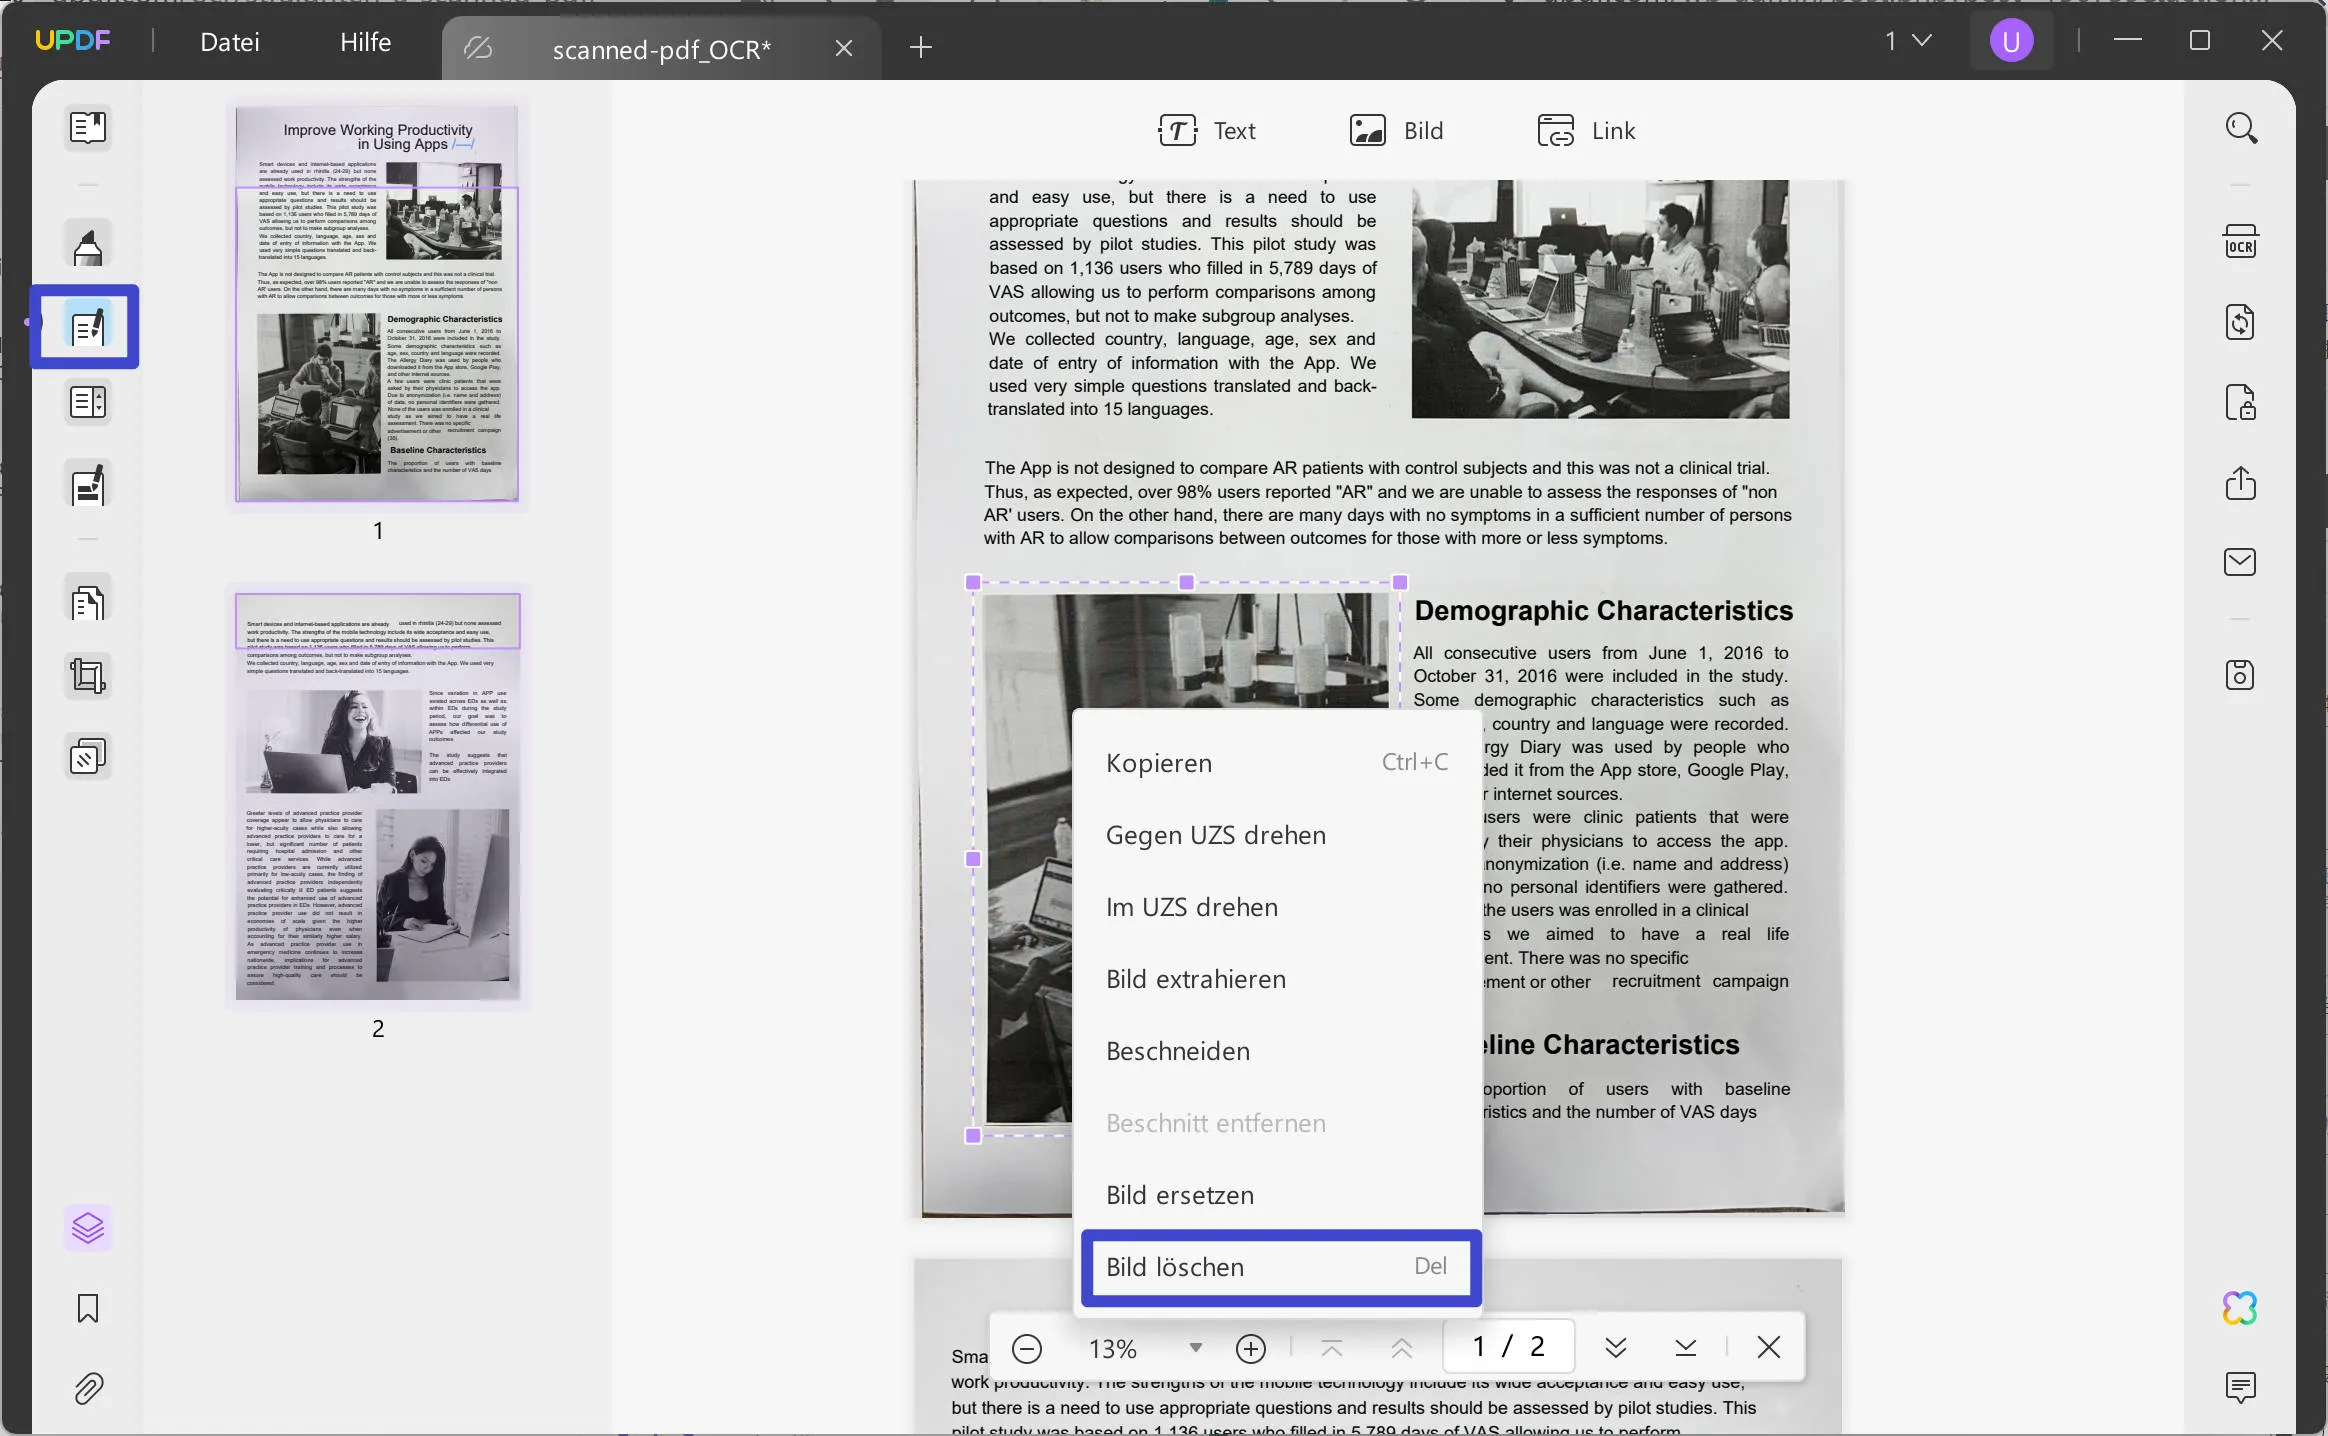 Gescannte PDF-Datei begradigen Hintergrundbild löschen, um gescannte PDF-Datei mit UPDF zu begradigen